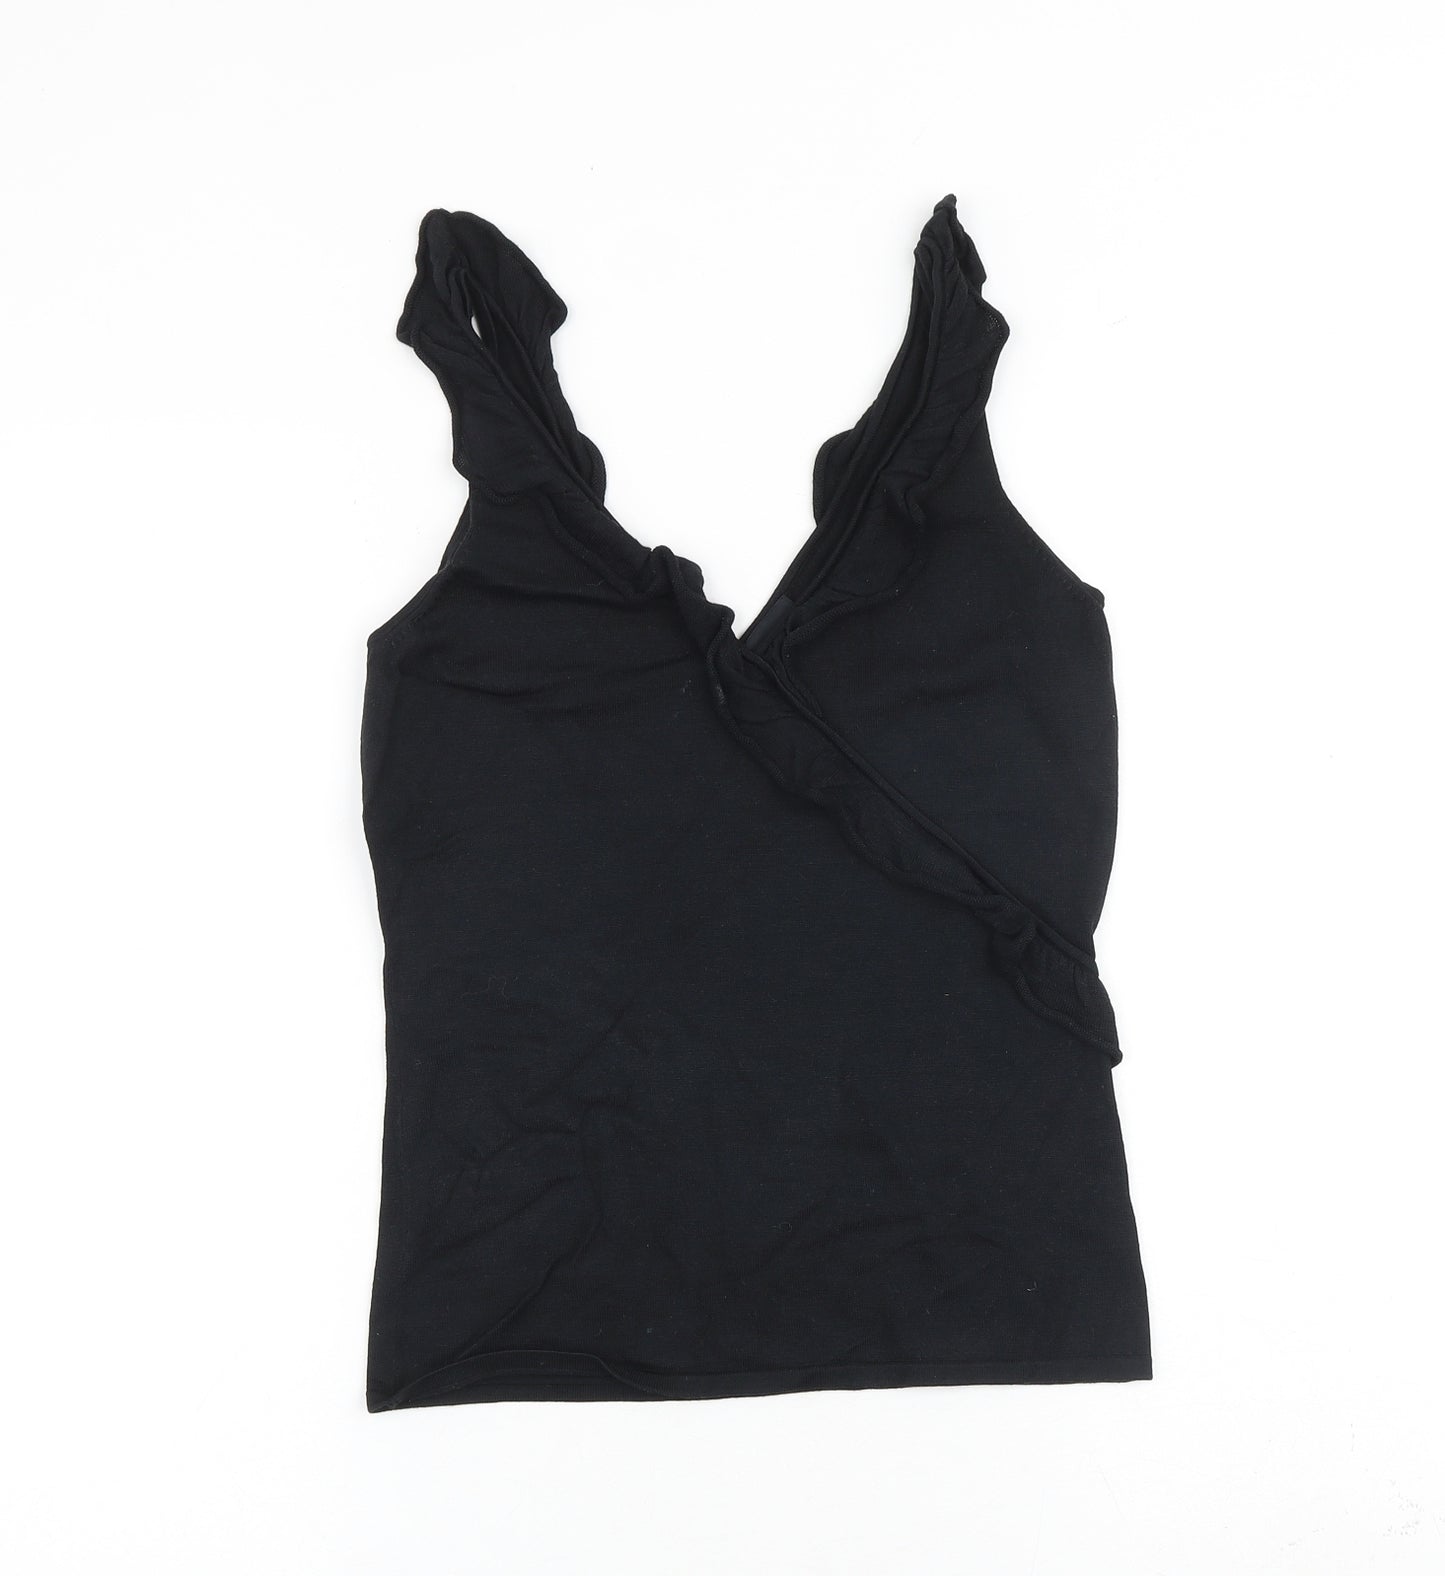 Hobbs Womens Black Polyester Basic Tank Size 10 V-Neck